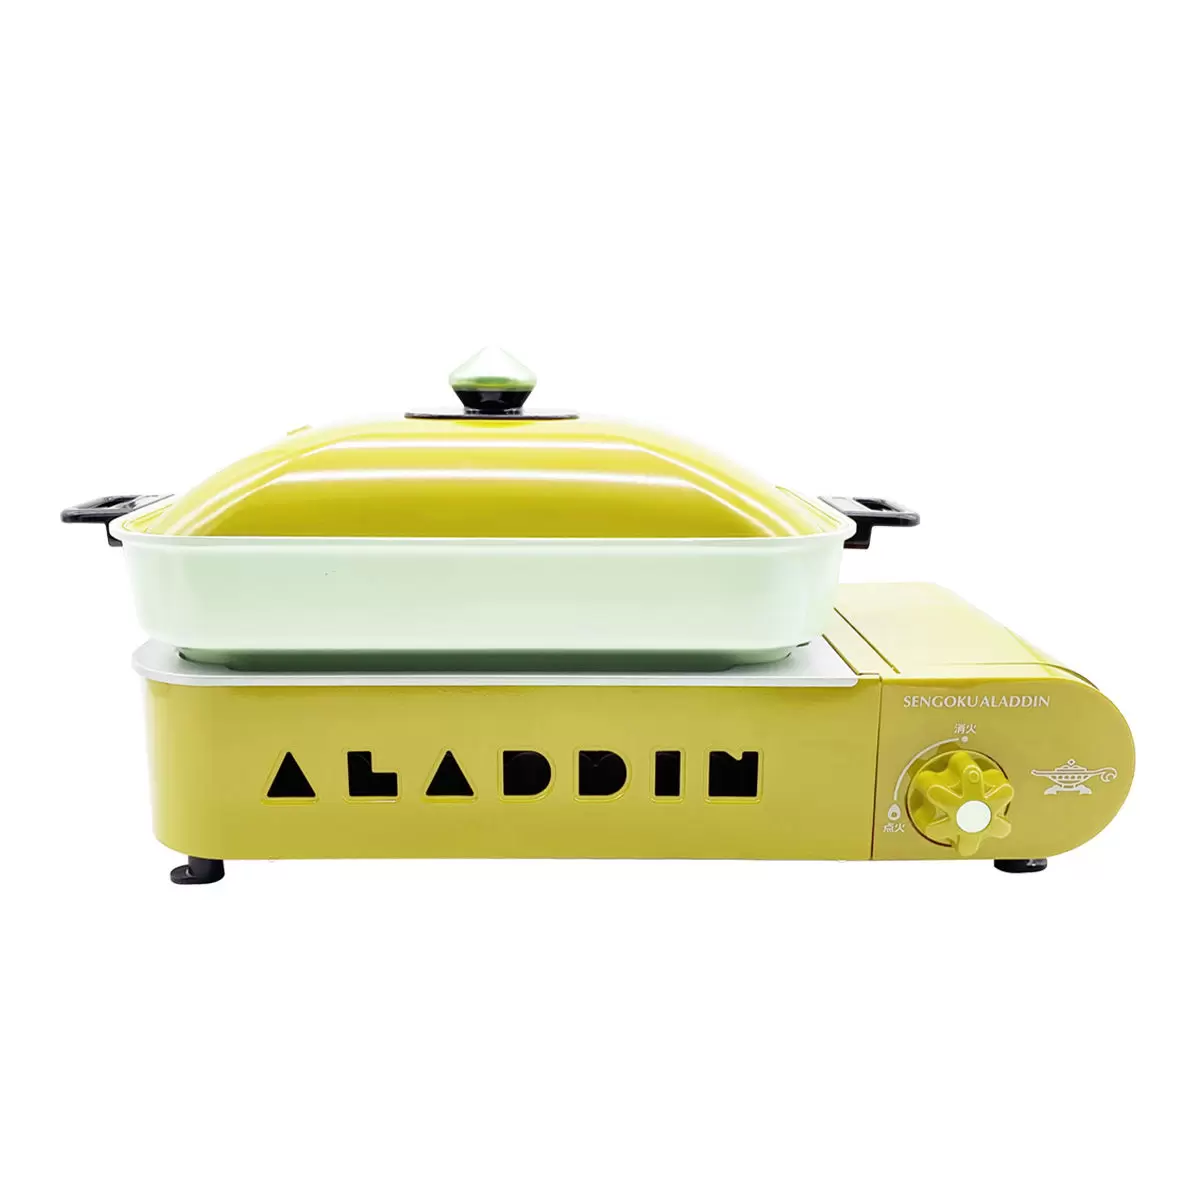 千石阿拉丁 2.1kW 煎煮烤雙盤卡式爐 SAG-RS21